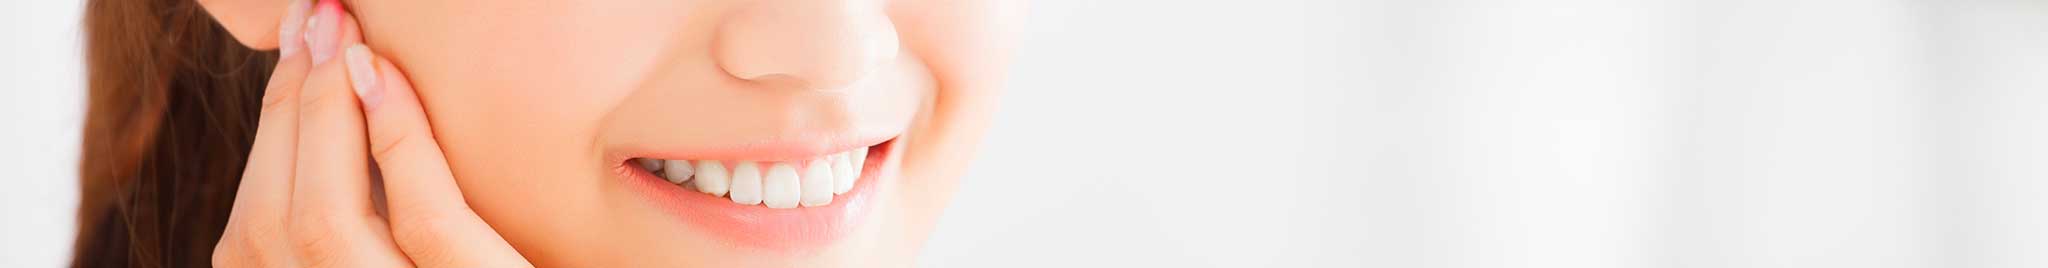 Teeth Whitening in Regulus